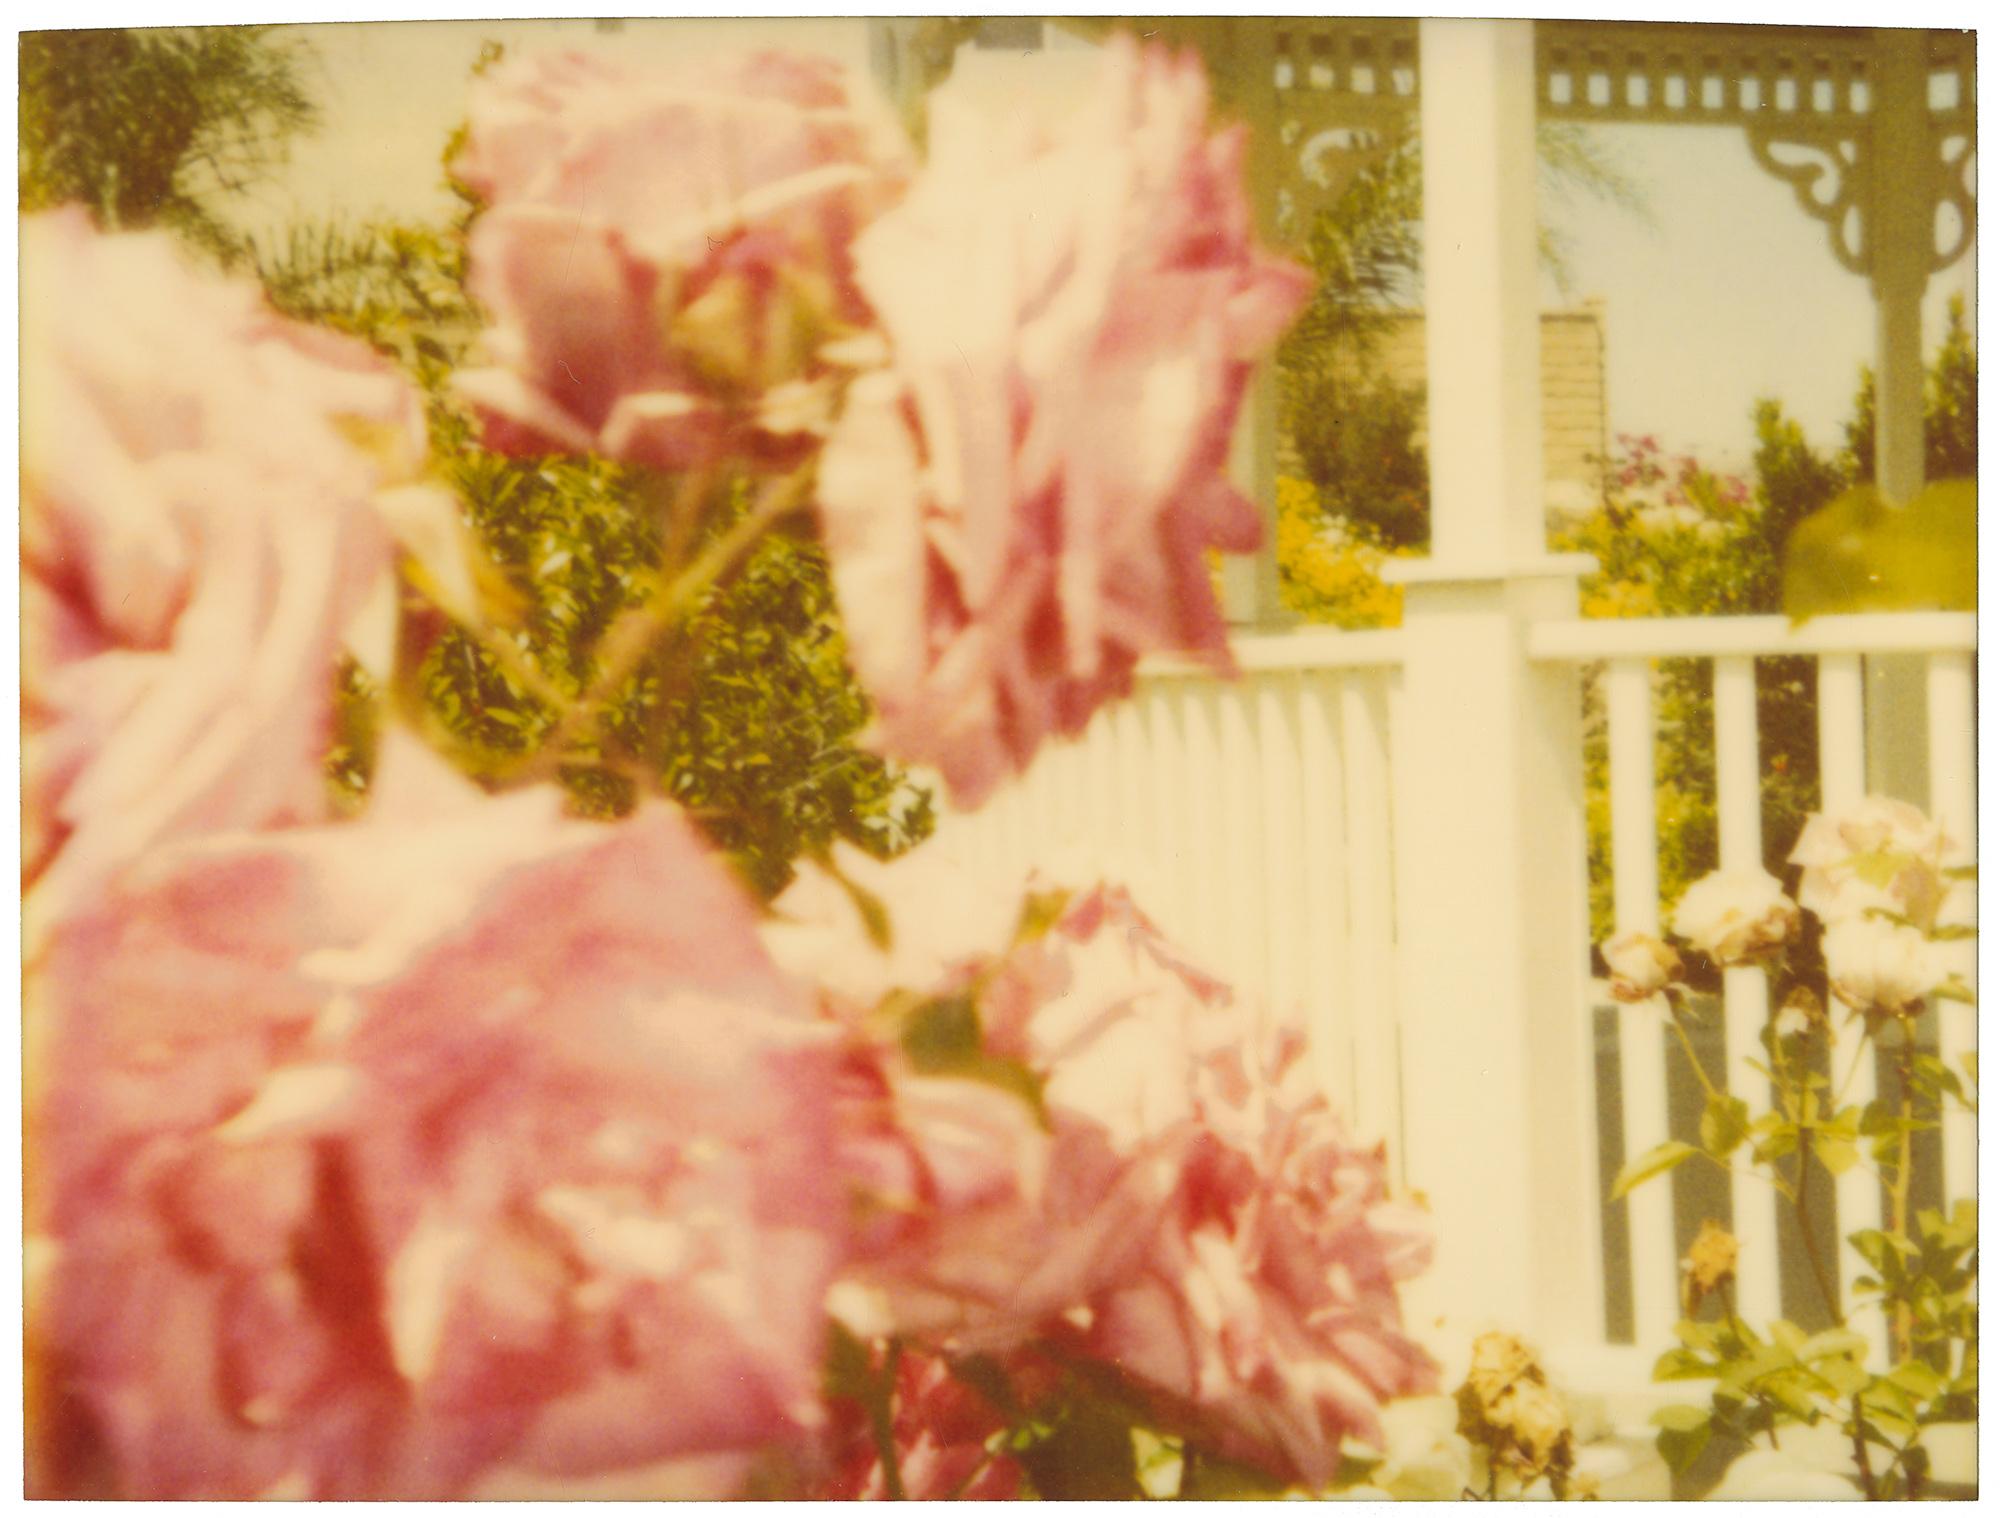 Rosegarden #01 (Suburbia), analog, diptych - Contemporary Photograph by Stefanie Schneider